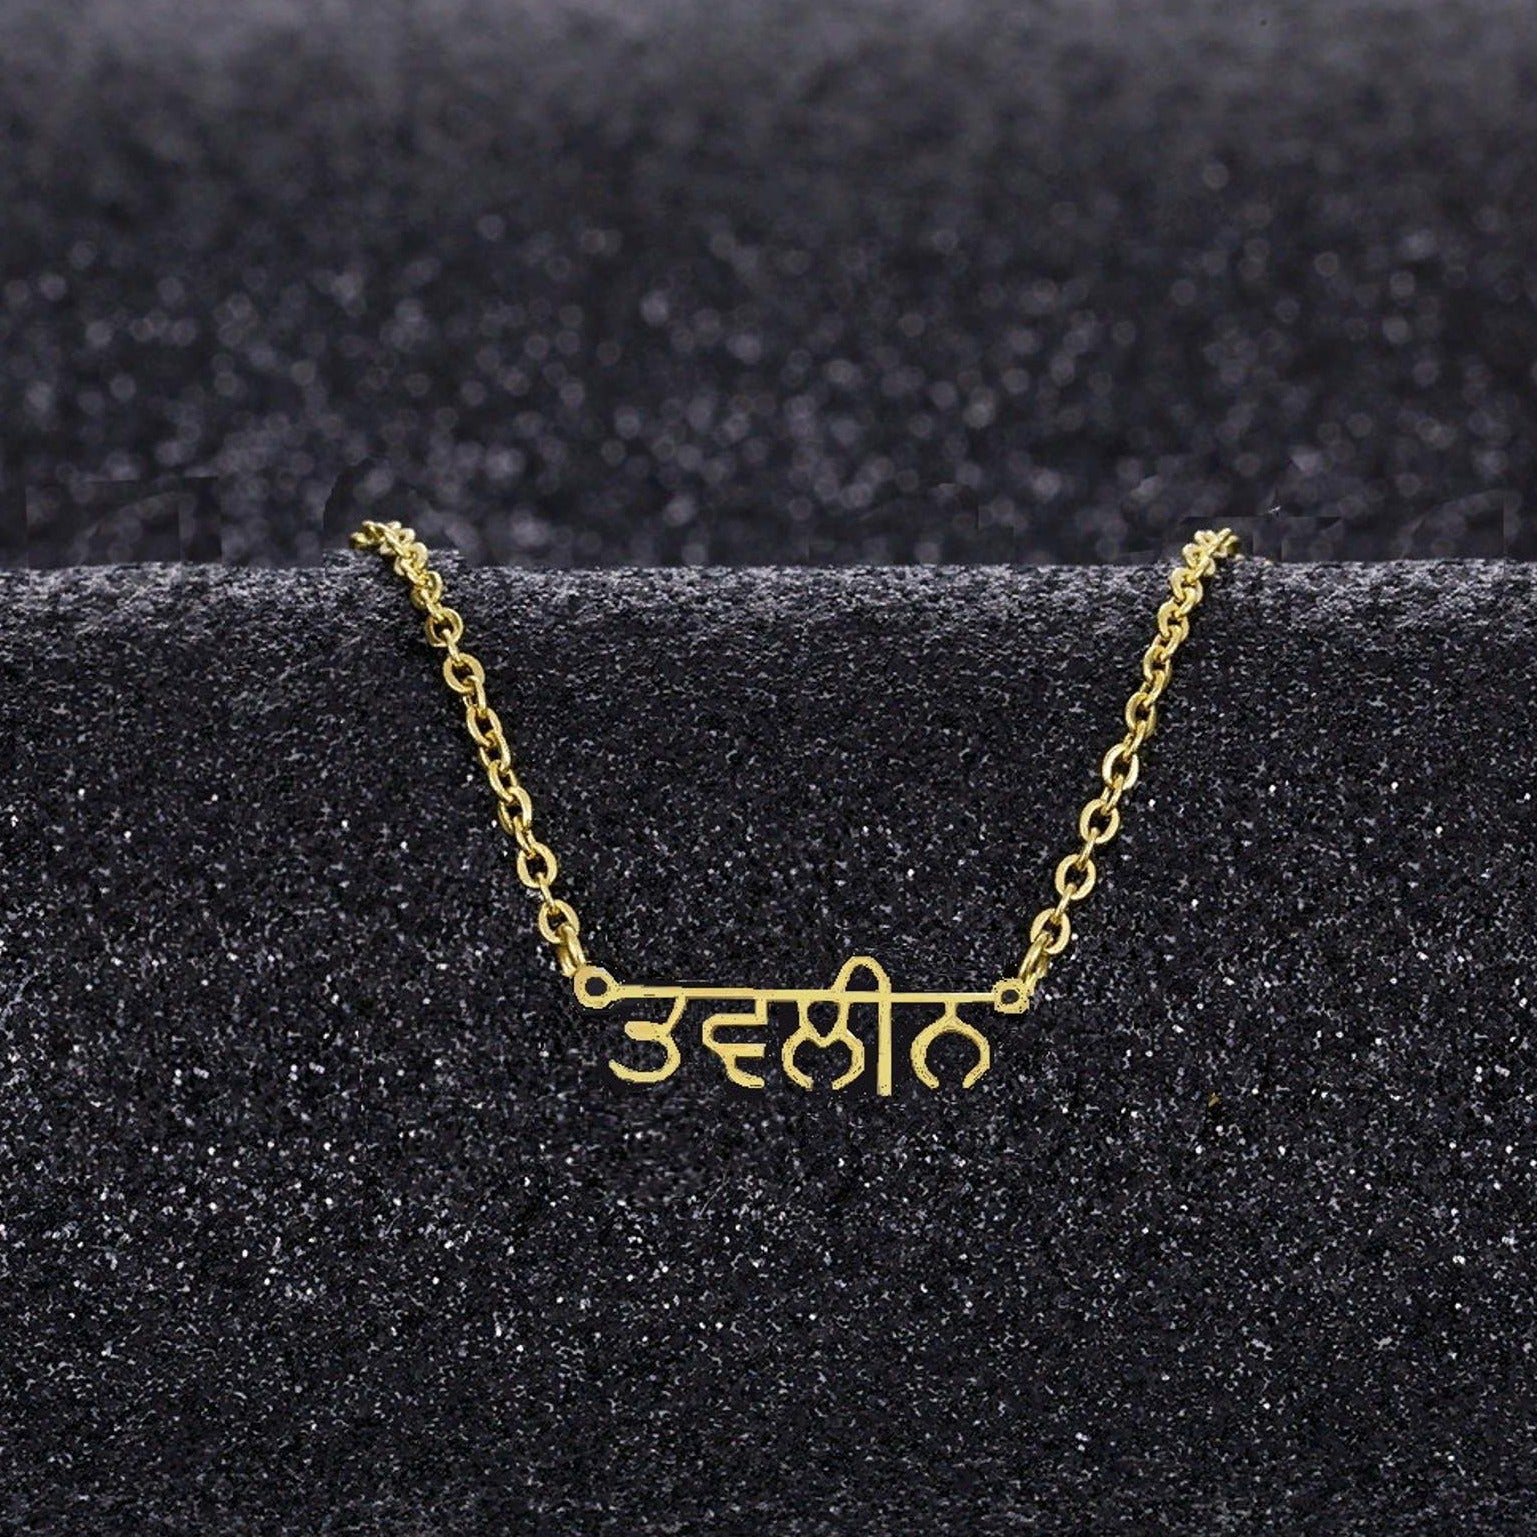 personalised custom punjabi name necklace gold 